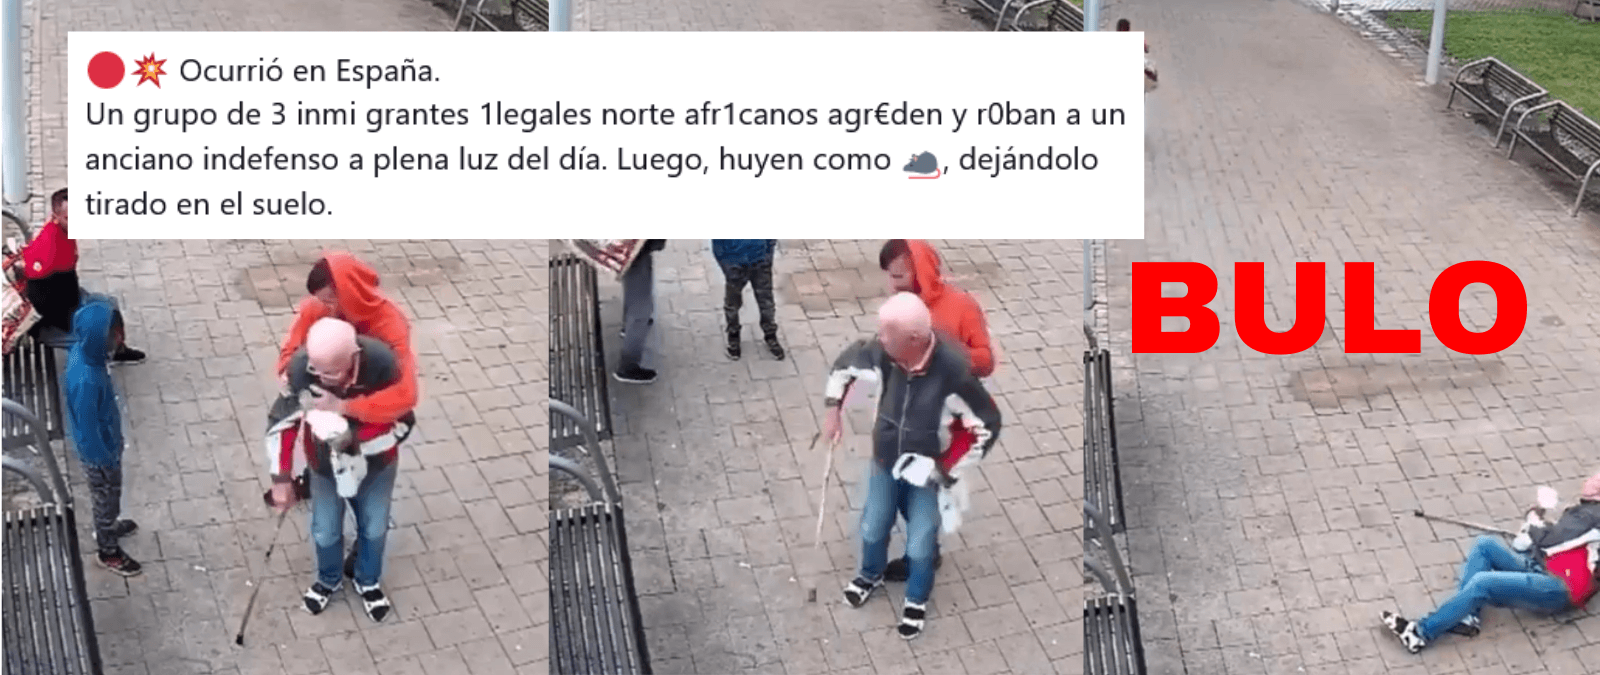 No, este vídeo no muestra a “inmigrantes ilegales” robando y agrediendo a un anciano en España